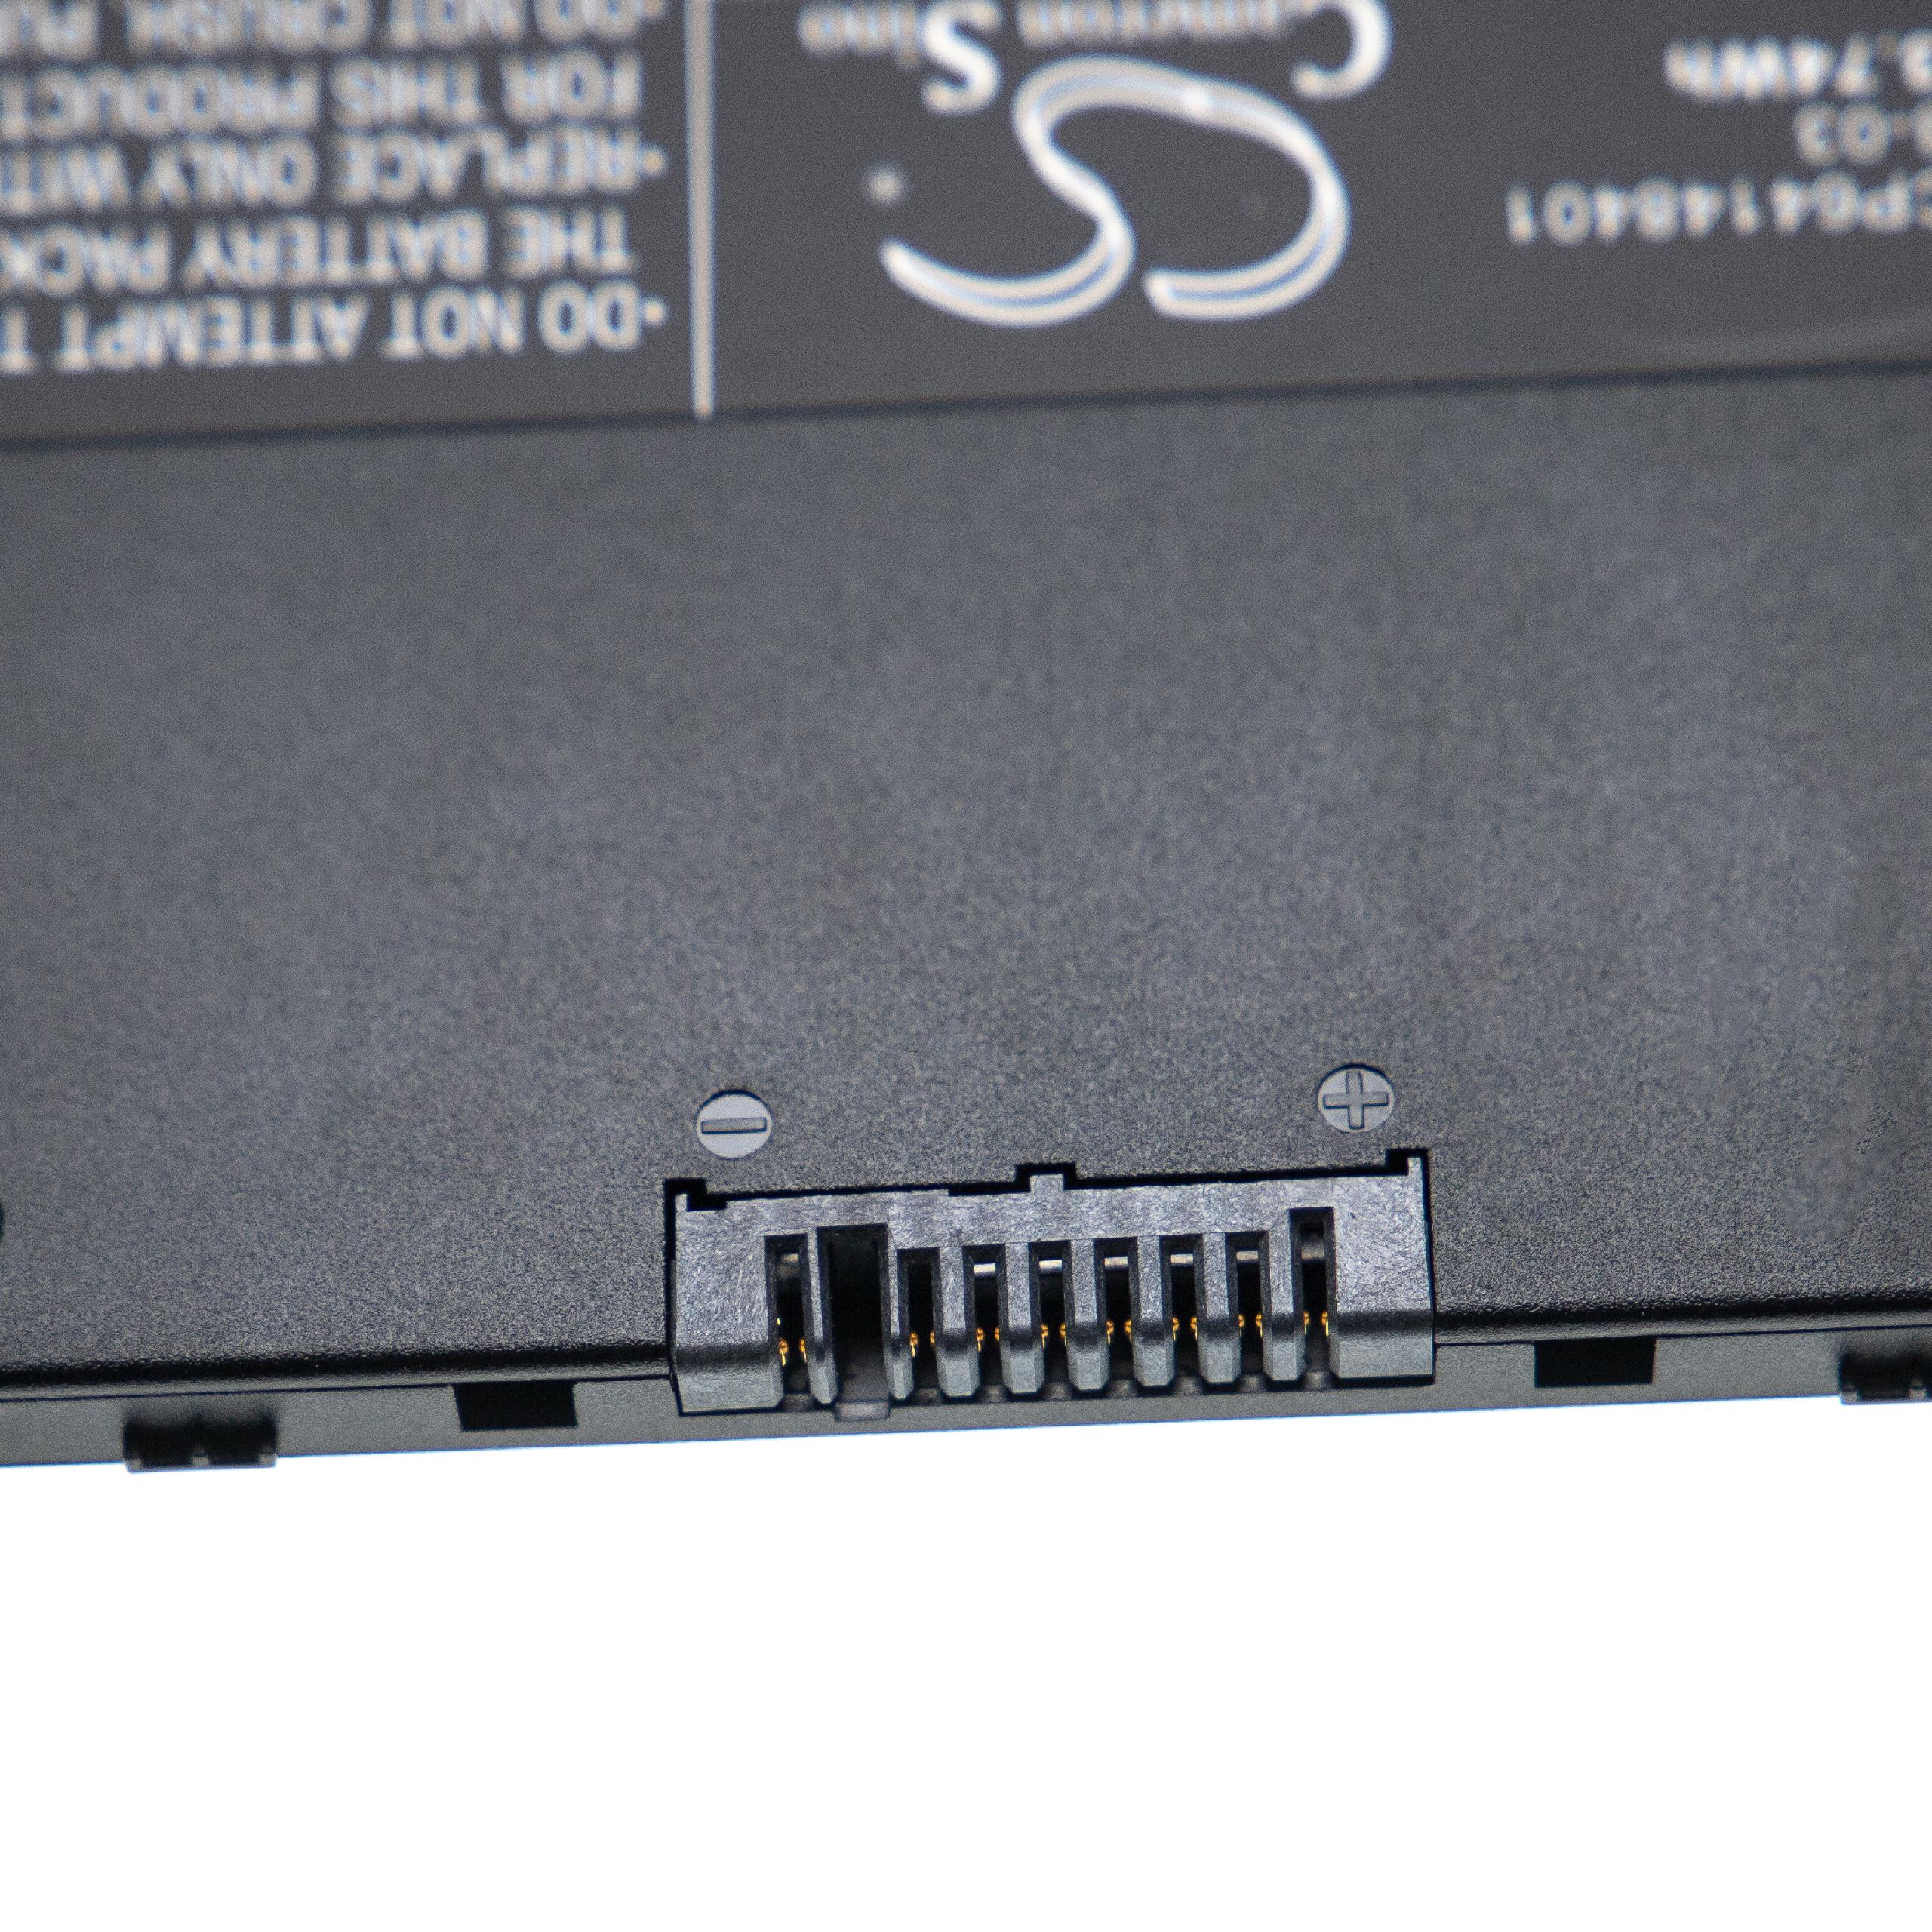 Batterie remplace Fujitsu CP641484-01, CP64148401 pour ordinateur portable - 4050mAh 10,8V Li-ion, noir